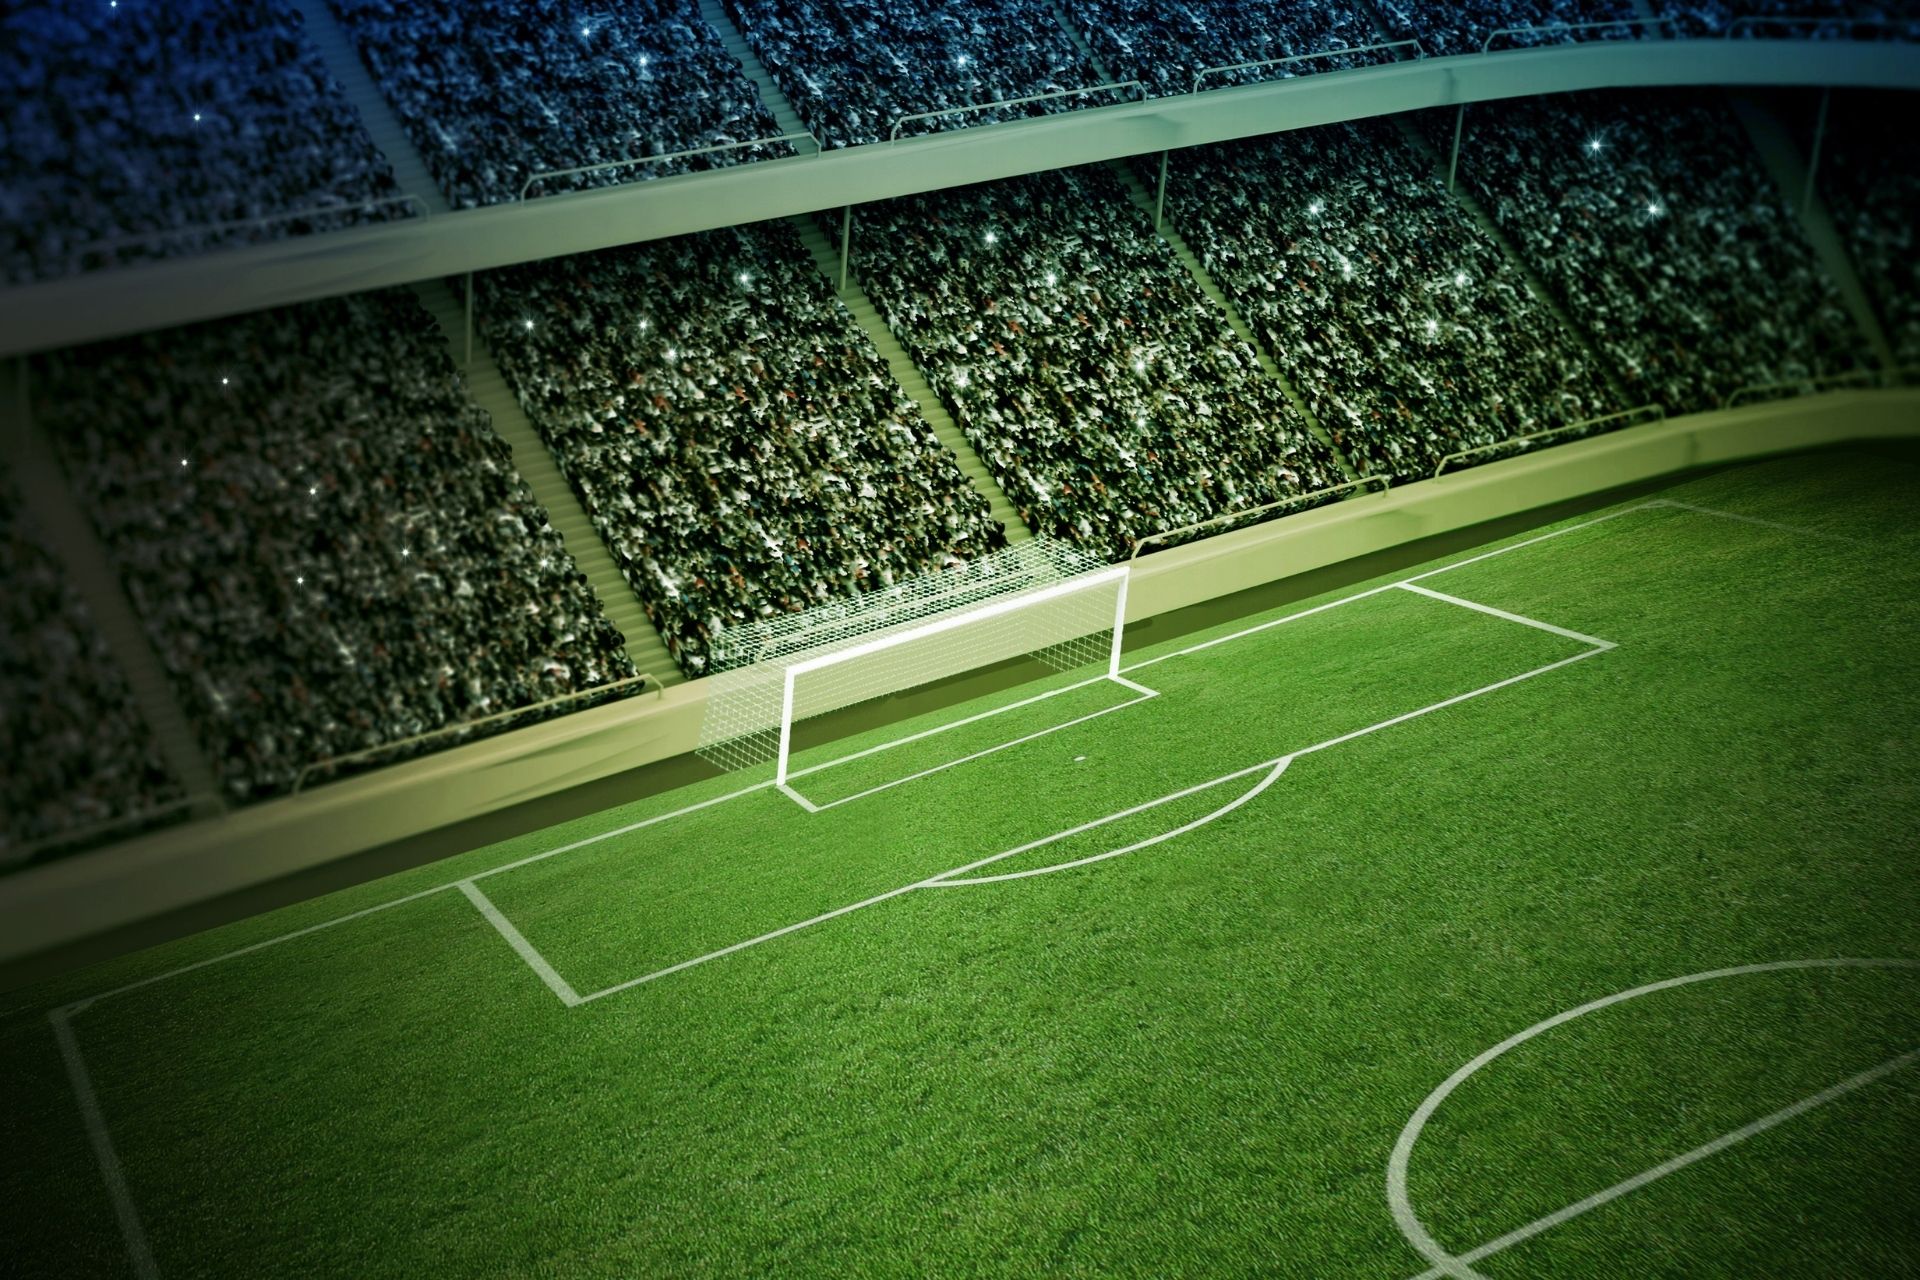 Na stadionie Coliseum Alfonso Pérez dnia 2021-10-03 16:30 miało miejsce spotkanie Getafe vs Real Sociedad zakończone wynikiem 1-1